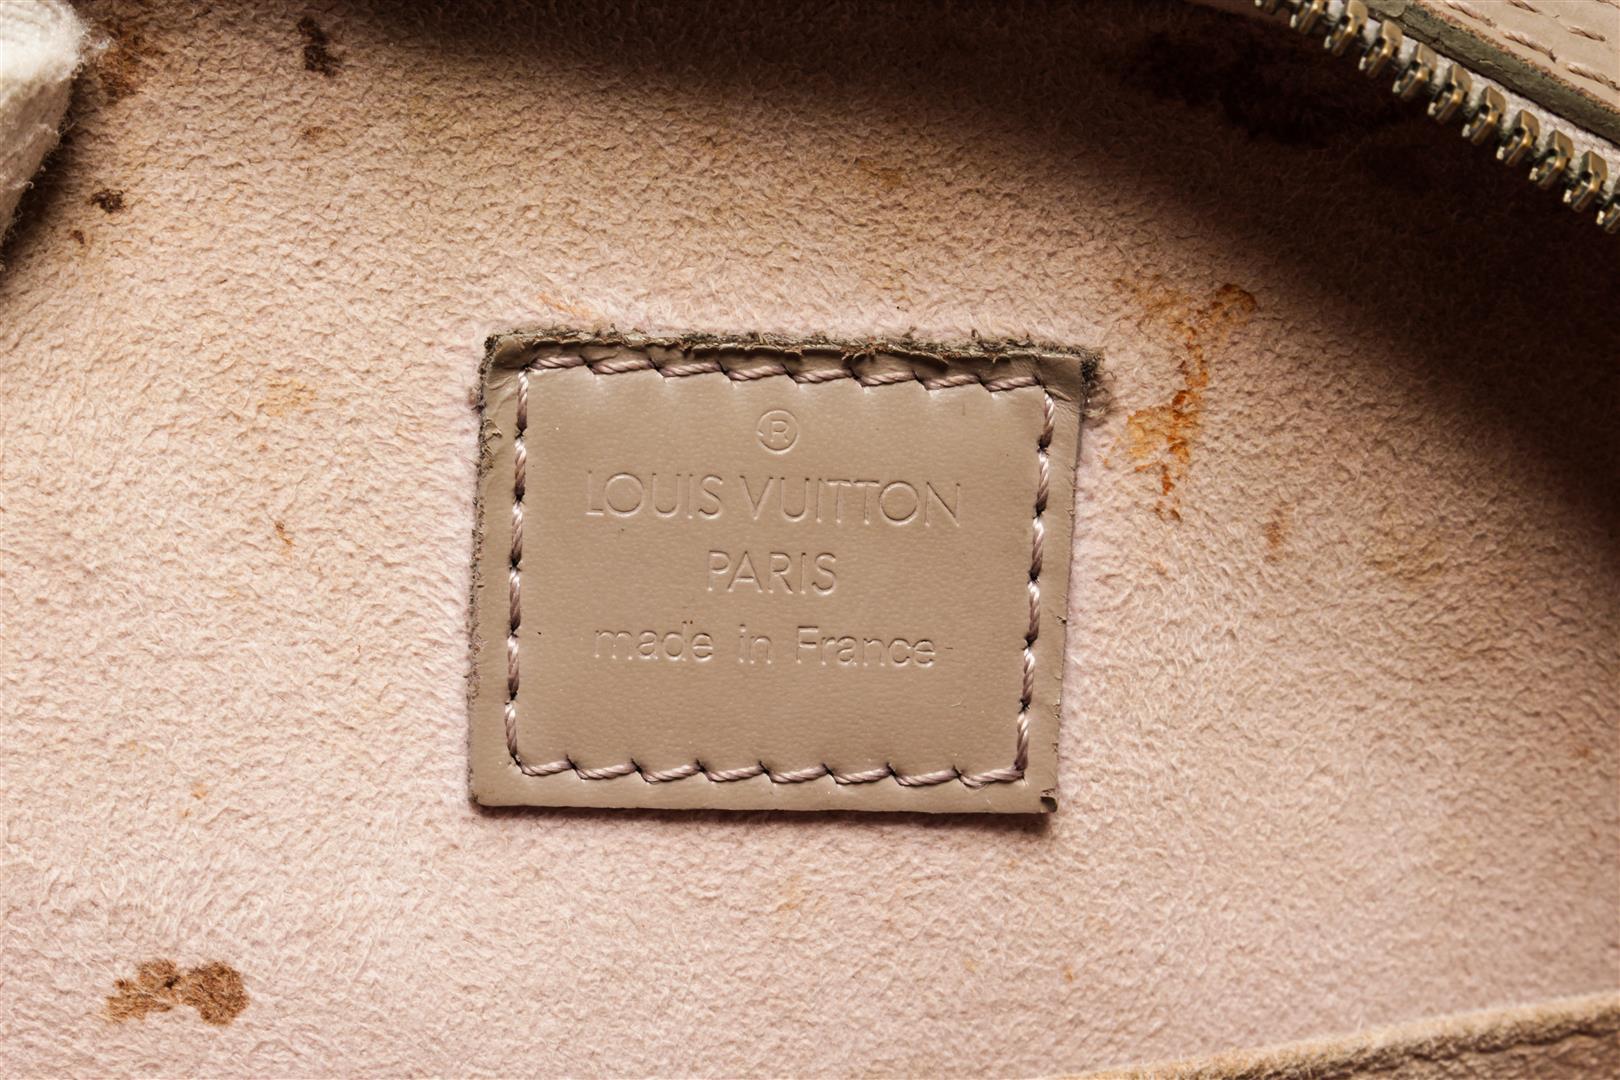 Louis Vuitton Grey Jasmine Epi Leather Bag